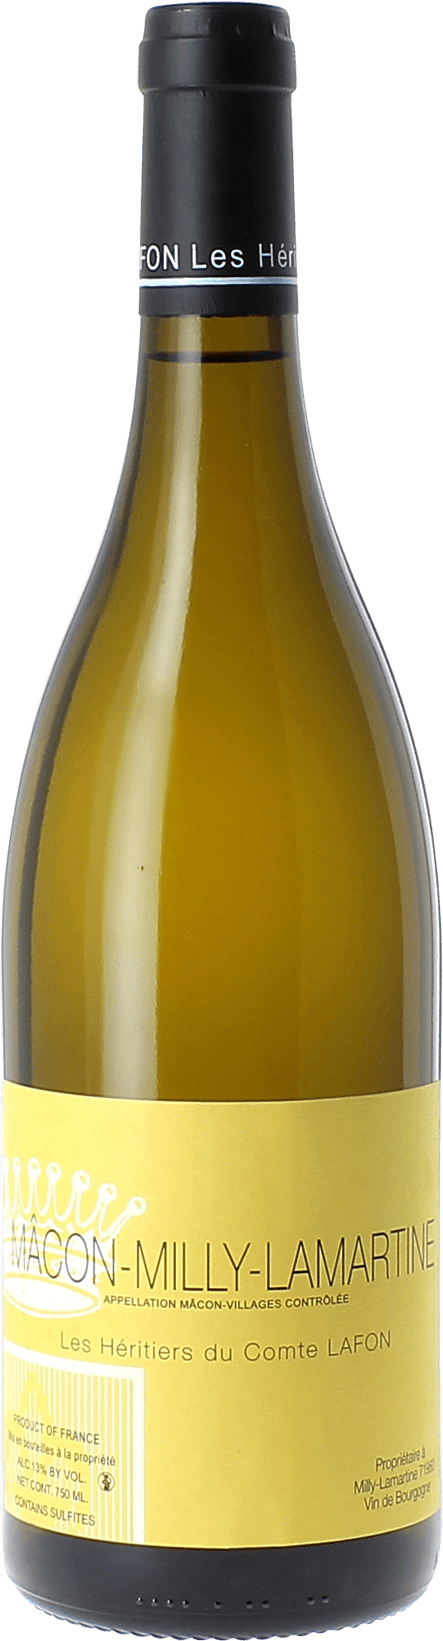 Macon milly lamartine 2019 Domaine Les Hritiers du Comte Lafon, Bourgogne blanc